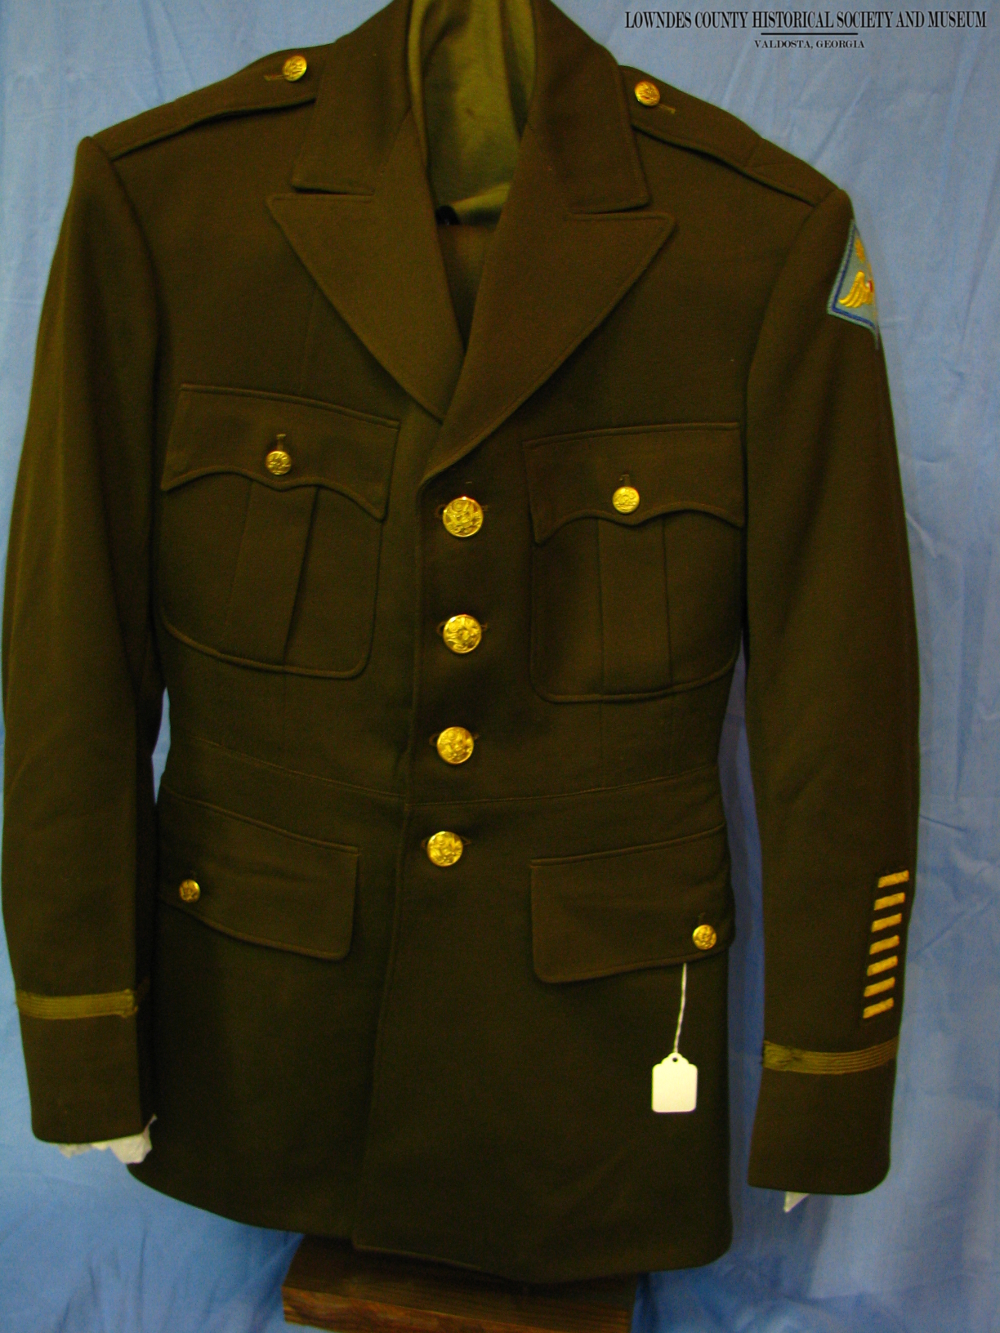 William Wylie "Billy" Birds WWII Uniform Jacket